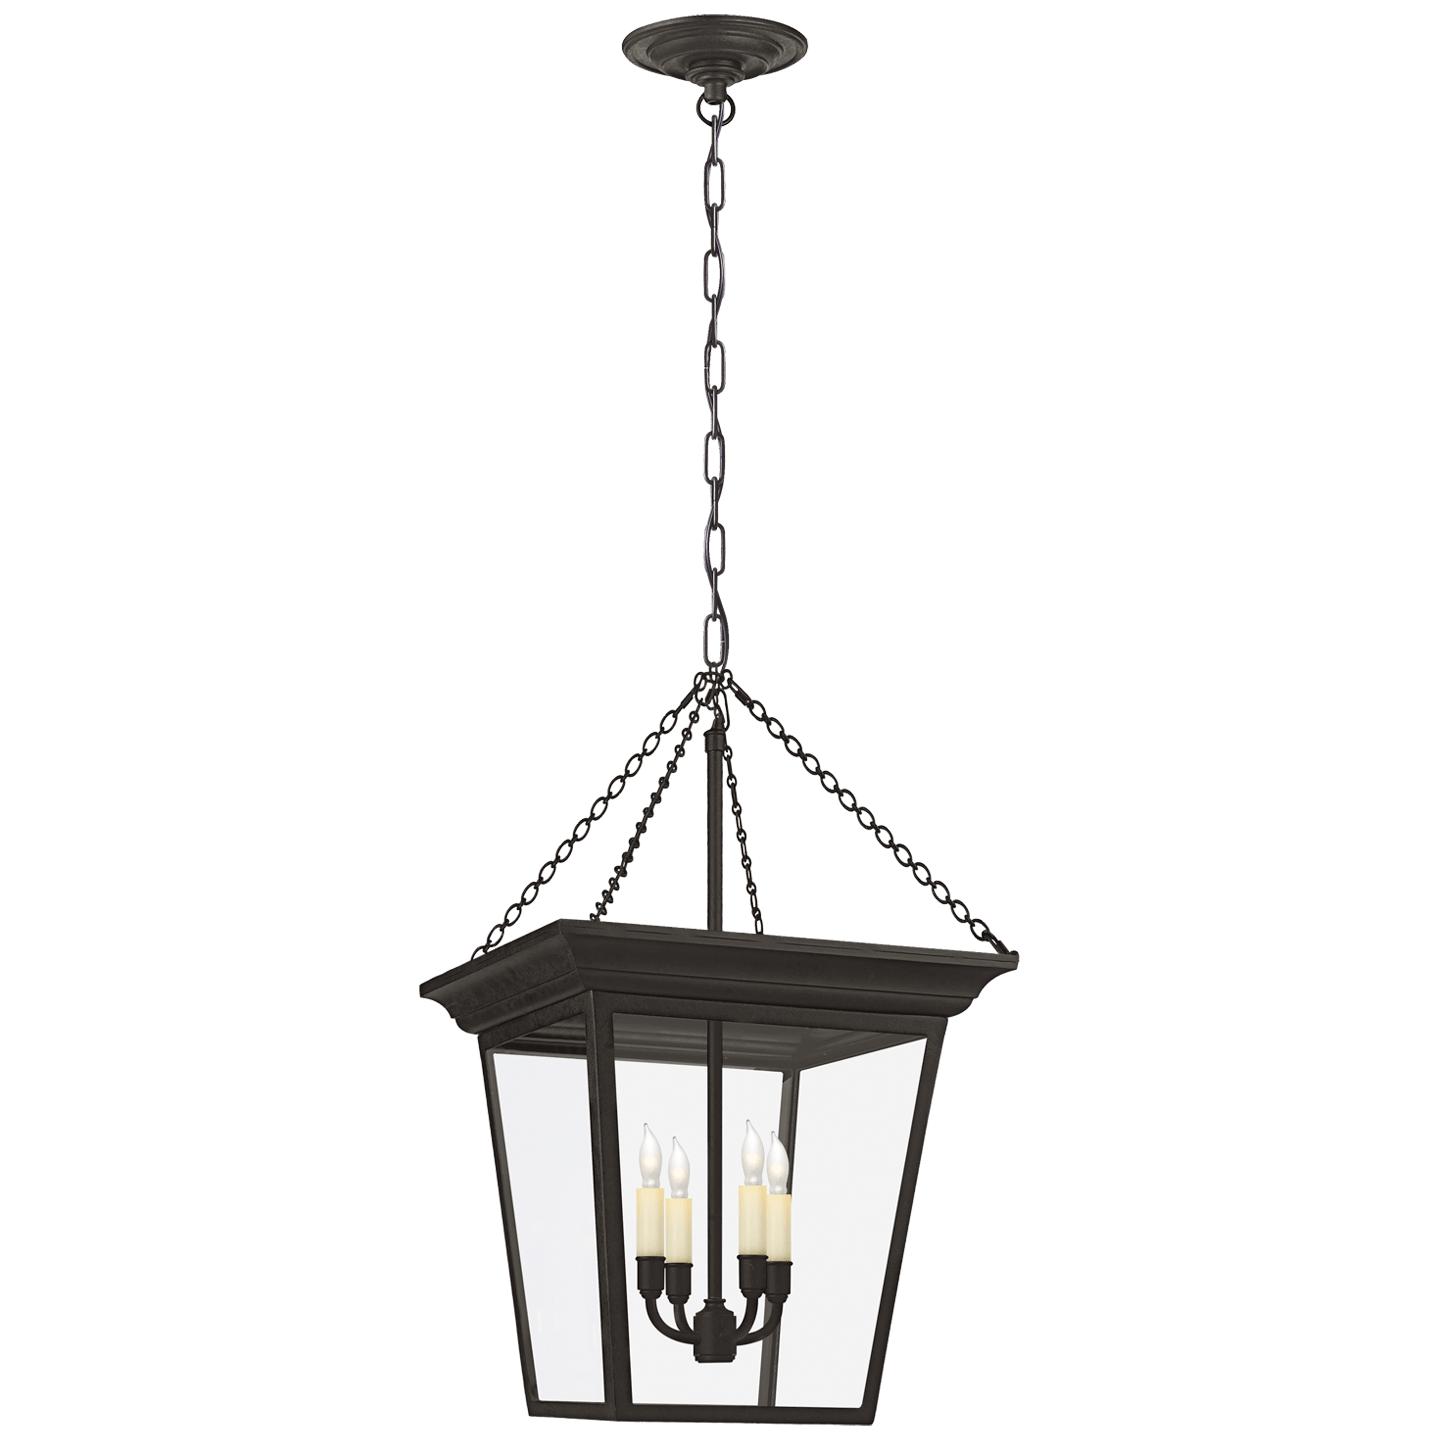 Купить Подвесной светильник Cornice Small Lantern в интернет-магазине roooms.ru